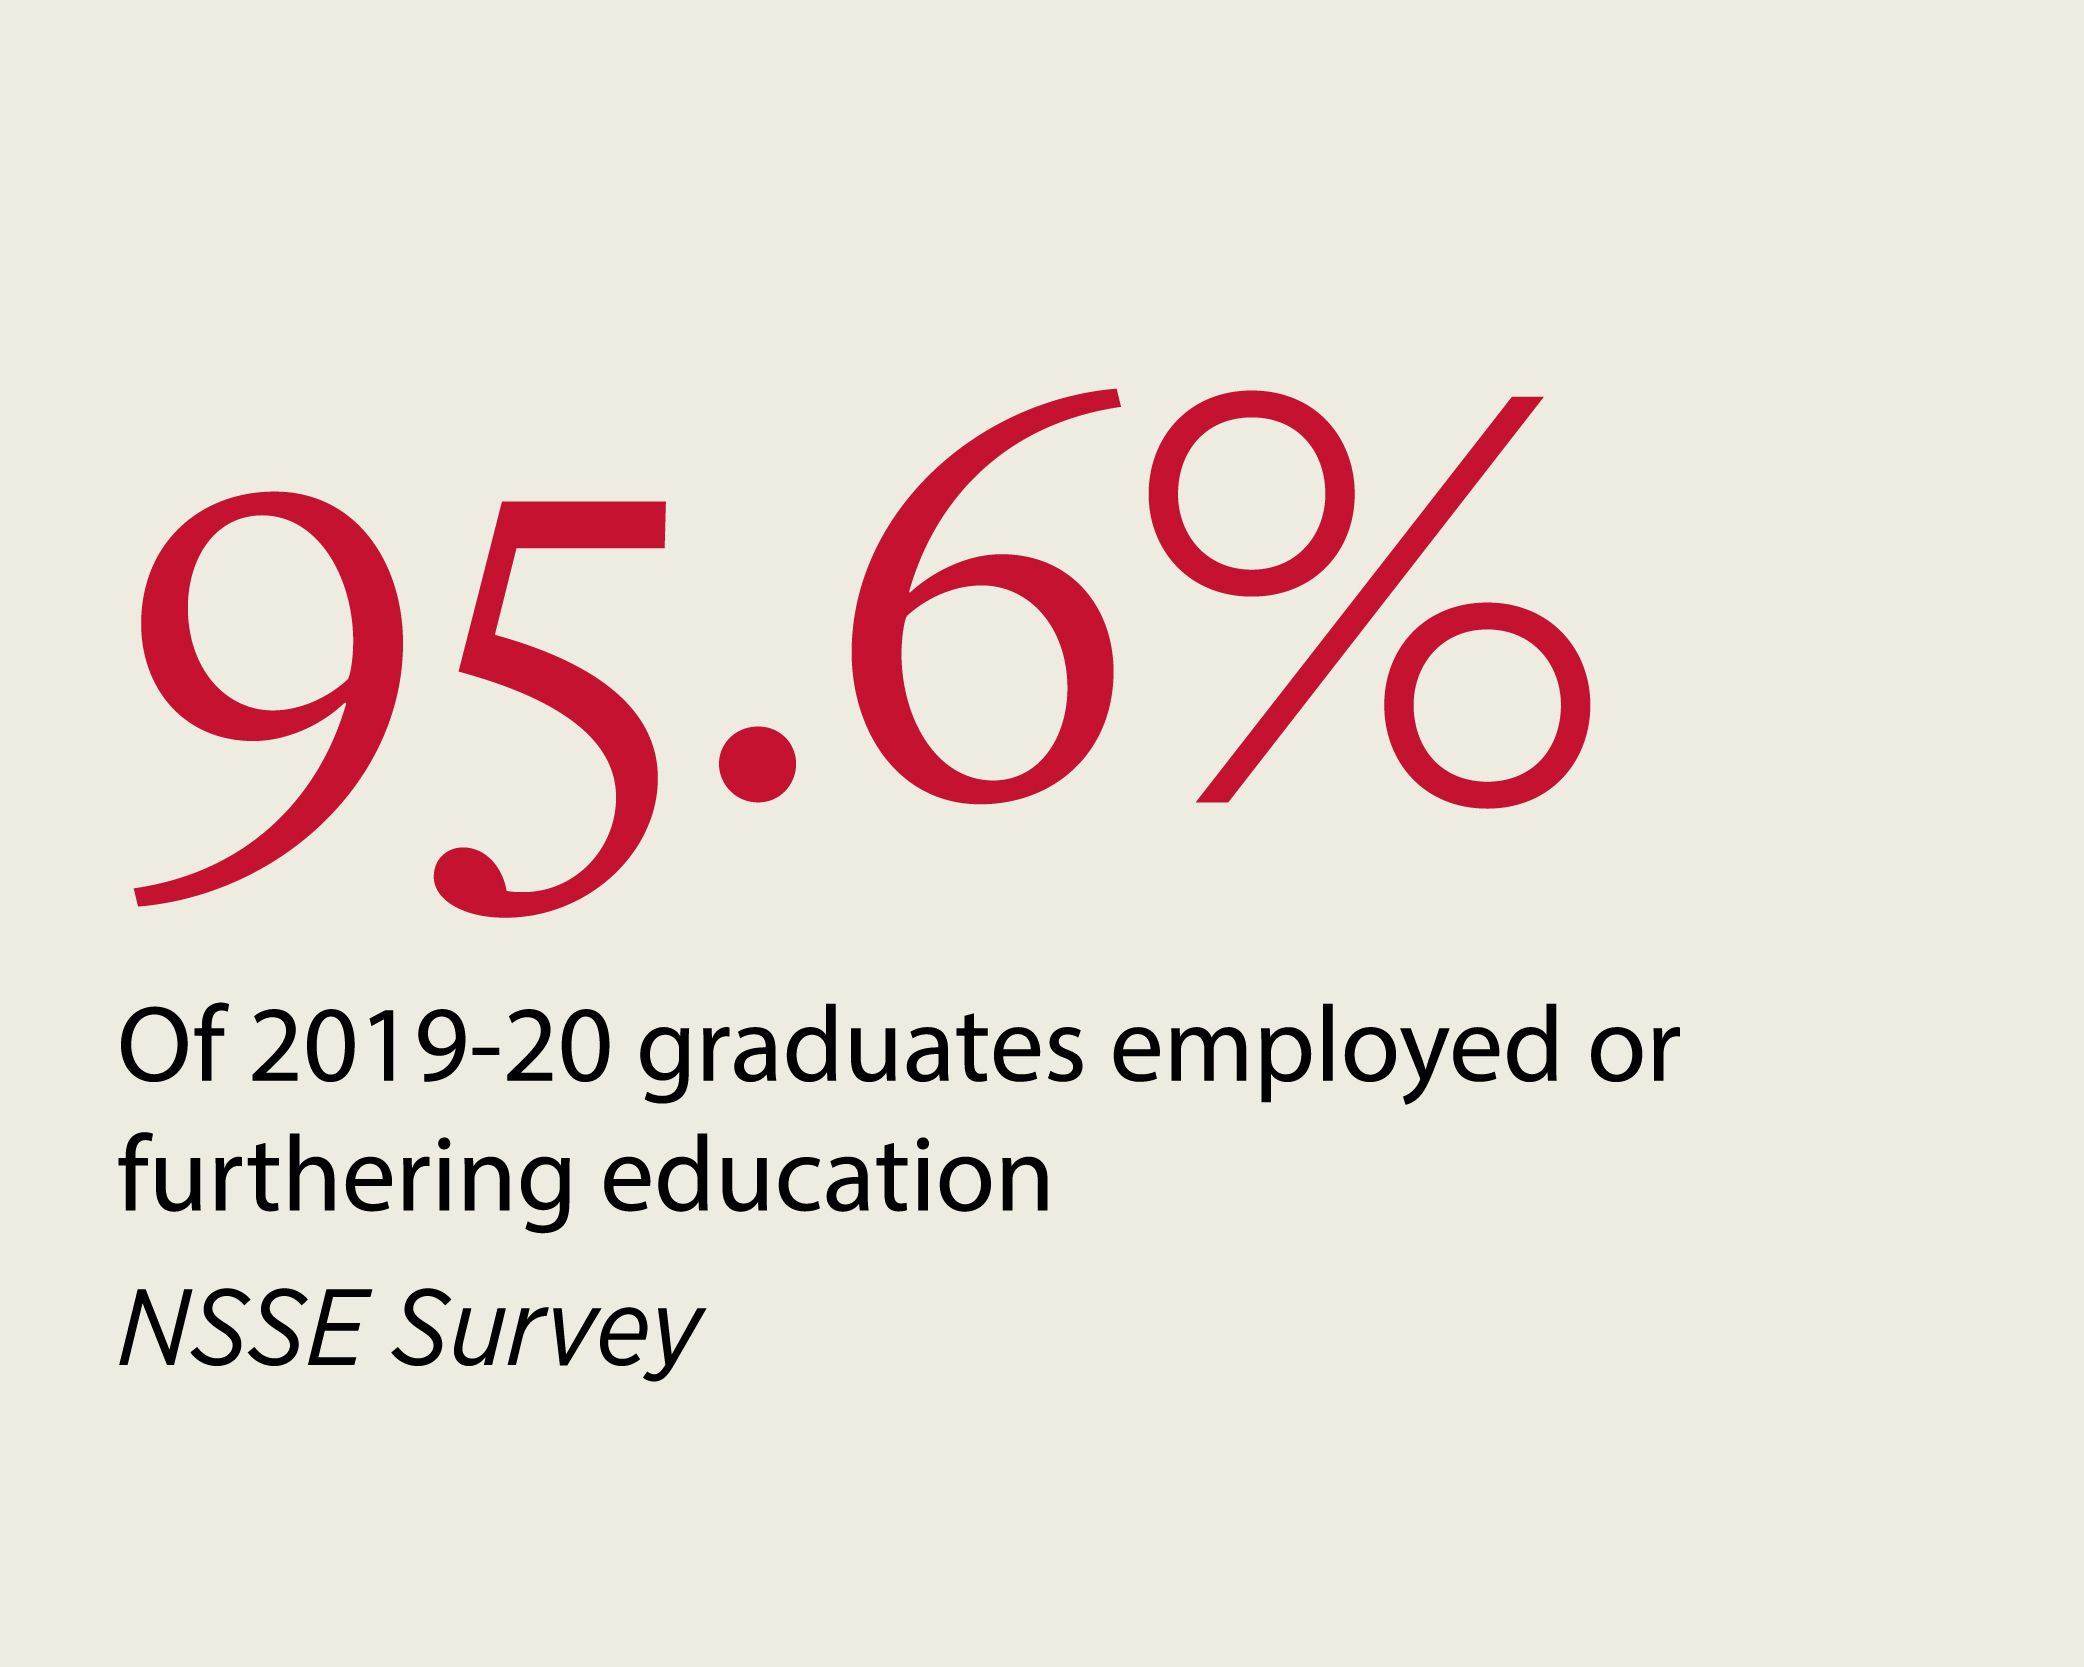 95.6% of 2019-20 graduates employed or furthering education NSSE Survey